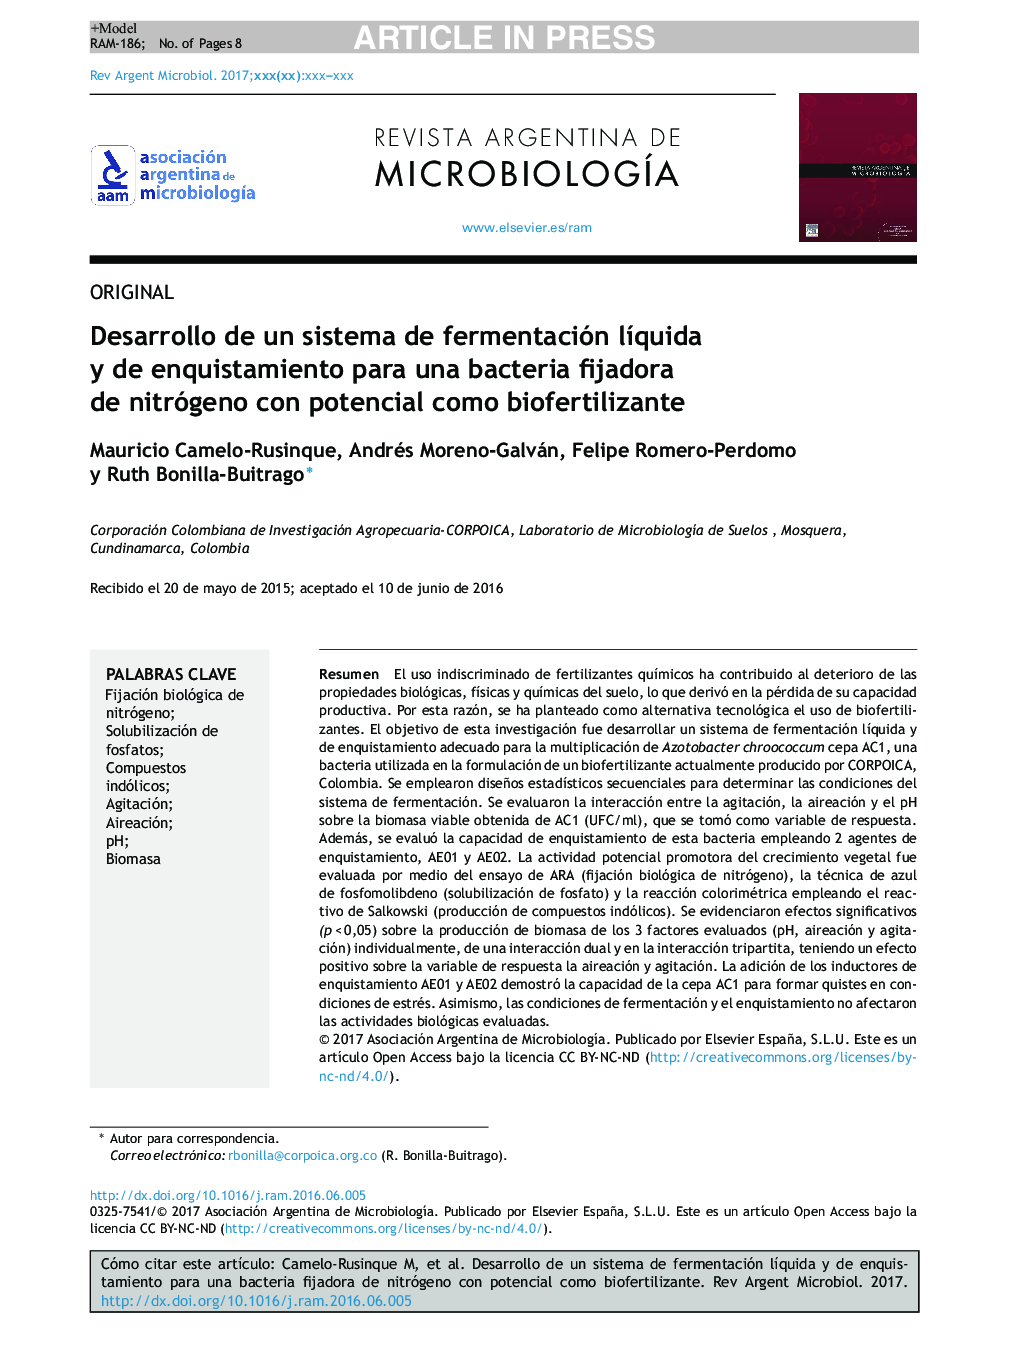 Desarrollo de un sistema de fermentación lÃ­quida y de enquistamiento para una bacteria fijadora de nitrógeno con potencial como biofertilizante